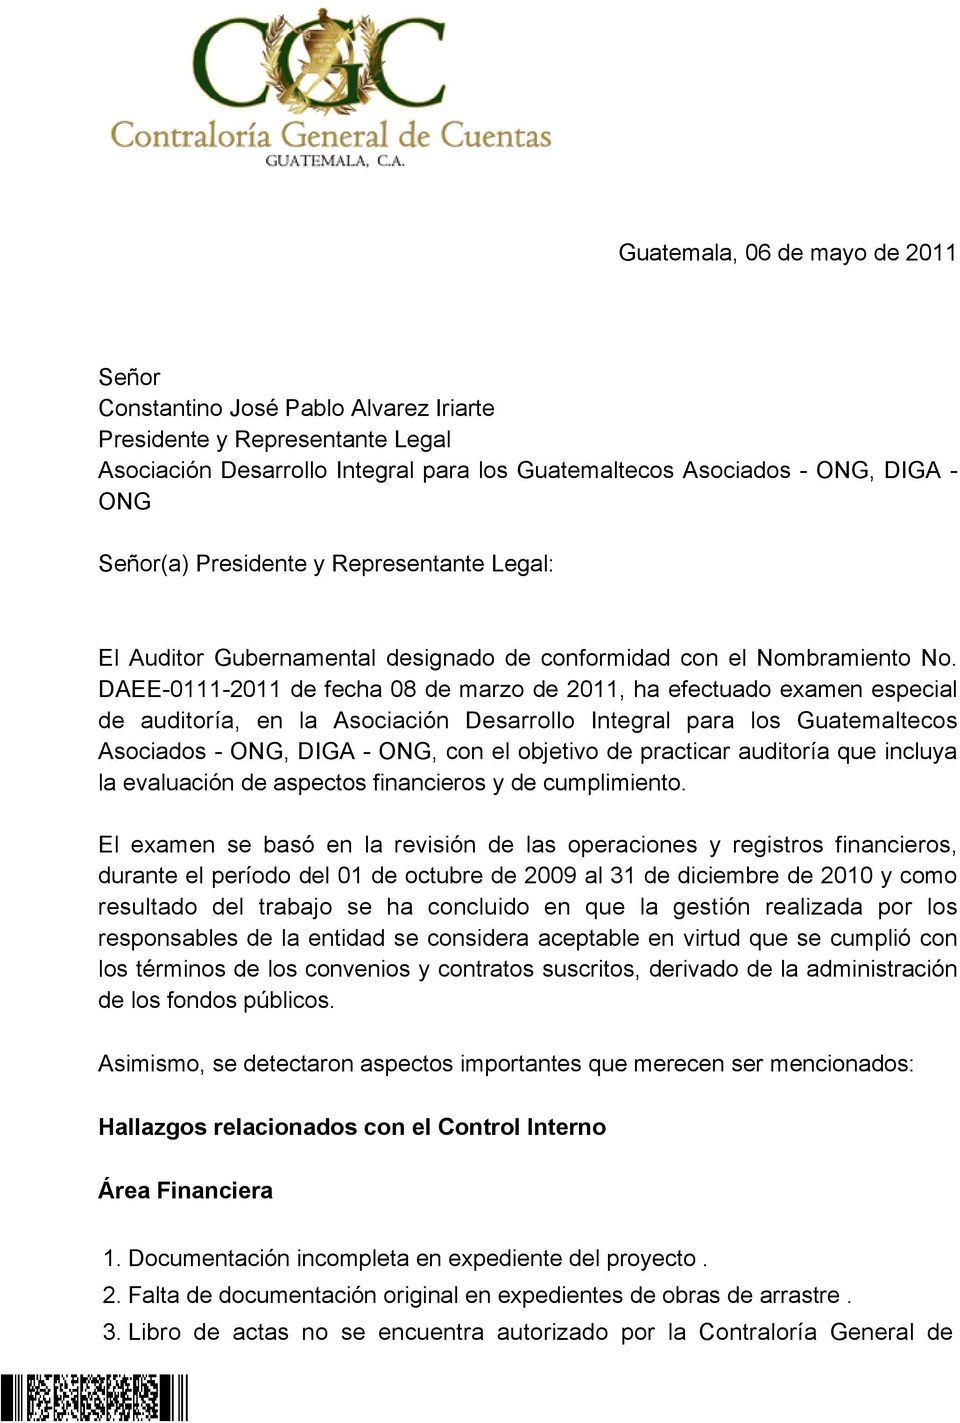 DAEE-0111-2011 de fecha 08 de marzo de 2011, ha efectuado examen especial de auditoría, en la Asociación Desarrollo Integral para los Guatemaltecos Asociados - ONG, DIGA - ONG, con el objetivo de